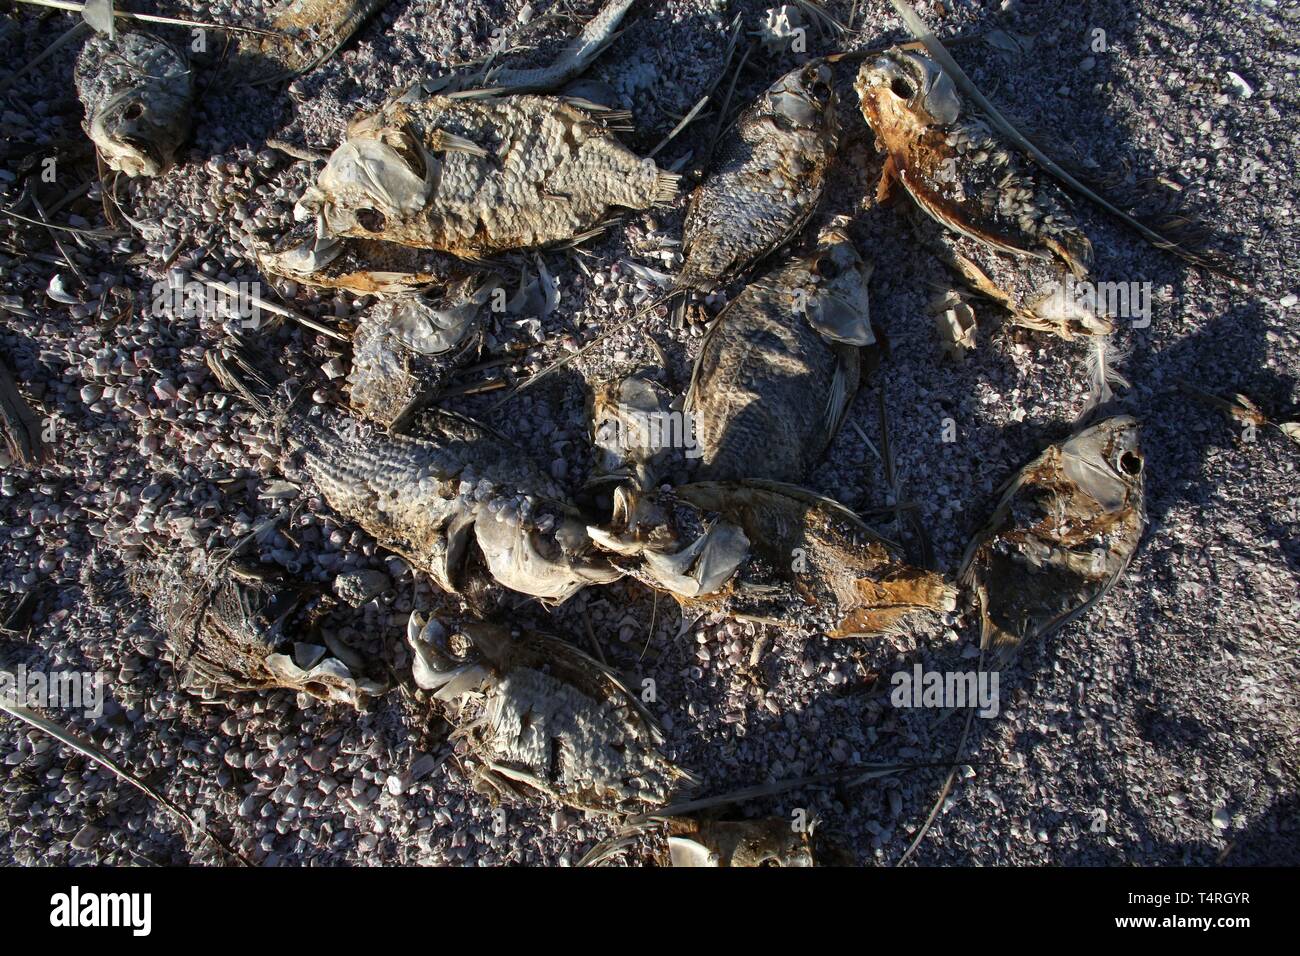 Bombay Beach, Californie, USA. 11Th Feb 2016. Les poissons morts sur les rives du lac Salton. La Salton Sea est une solution saline, peu profond, le lac du rift endoréique situé directement sur la faille de San Andreas, principalement dans le sud de la Californie et de l'empire des vallées Coachella. Le point le plus profond de la mer est de 5 pi (1,5 m) plus haut que le point le plus bas de la vallée de la mort. La dernière entrée d'eau du fleuve Colorado maintenant fortement contrôlée a été créé accidentellement par les ingénieurs de la Société de développement de la Californie en 1905. L'écoulement résultant submergé le canal d'ingénierie, et la rivière coulait int Banque D'Images